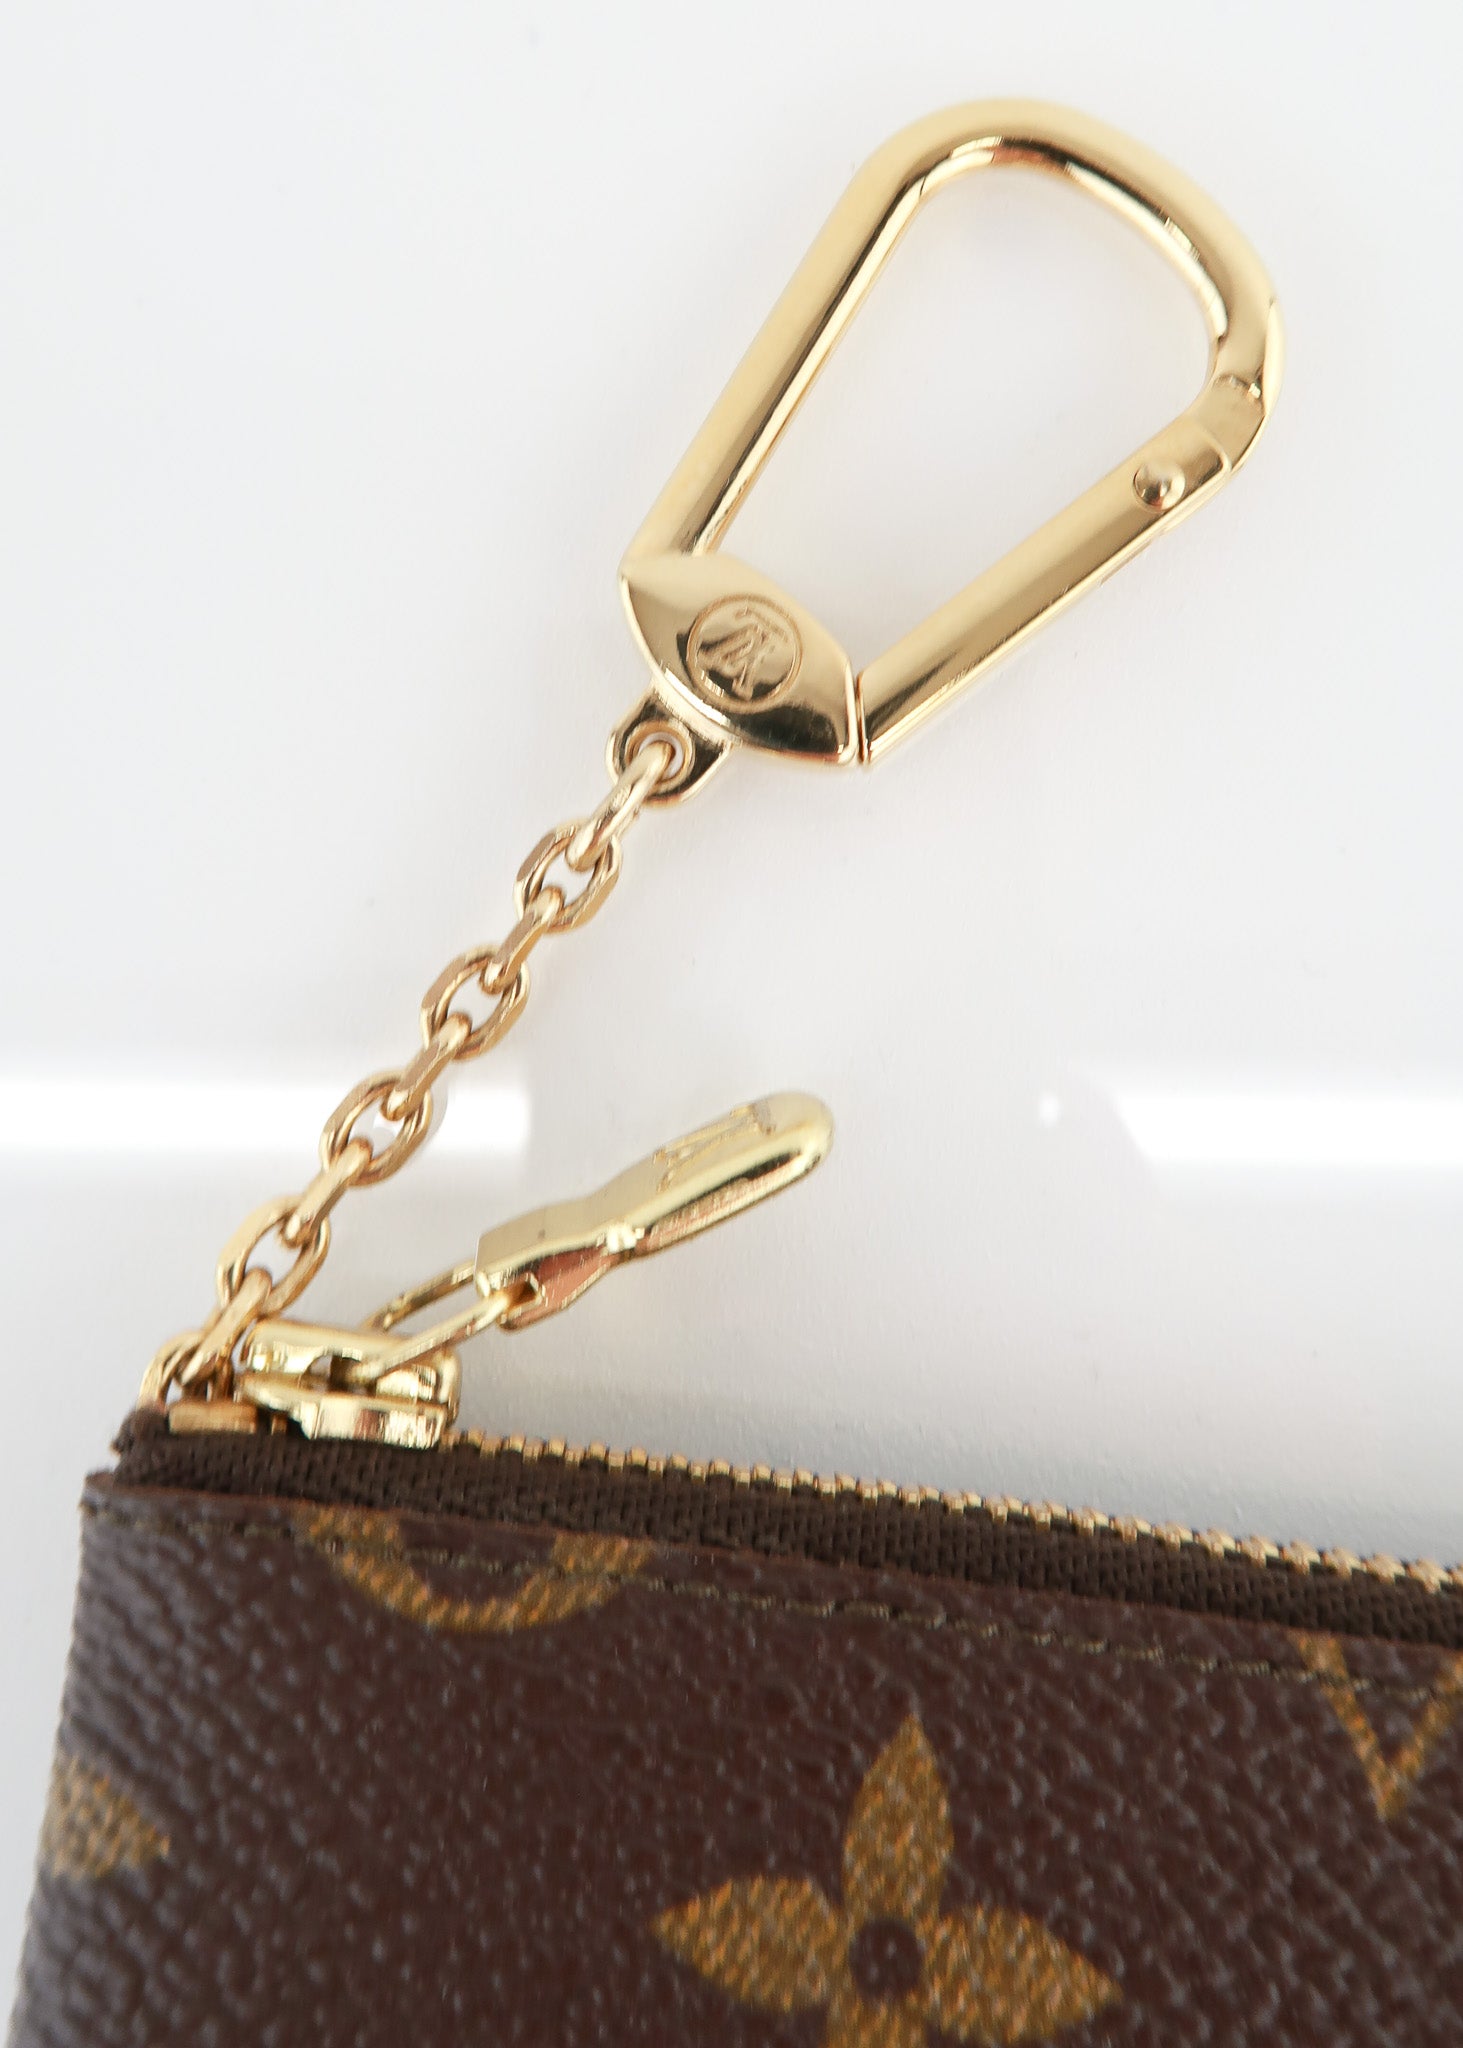 Louis Vuitton key cles monogram CA0955